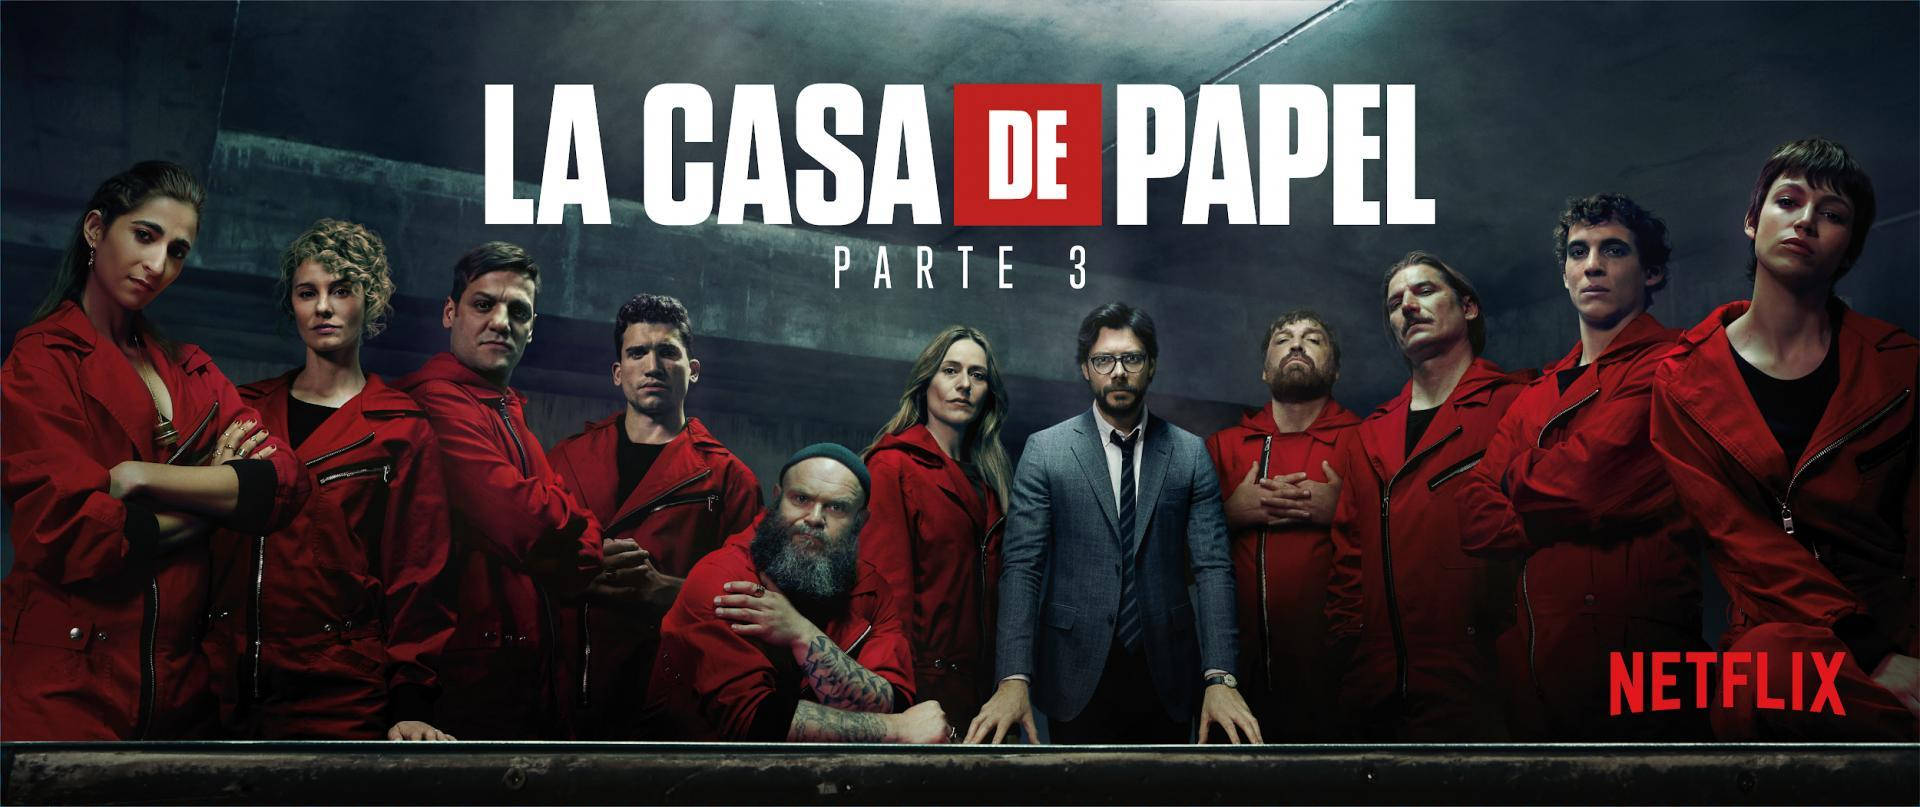 Download Netflix La De Papel Wallpaper | Wallpapers.com